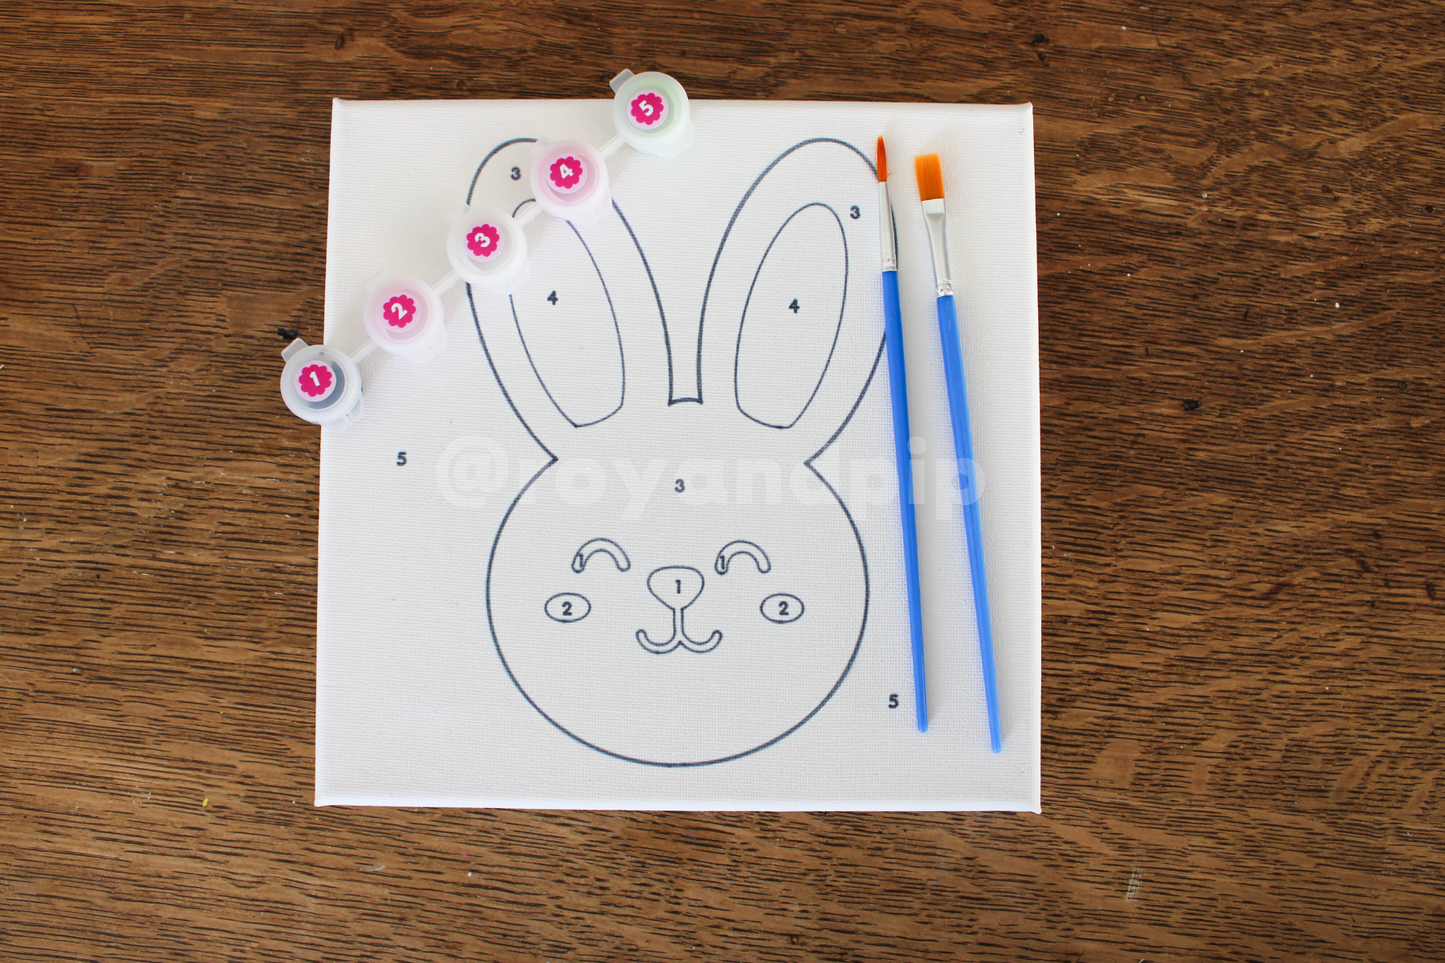 Hoppy Bunny Paint Kit